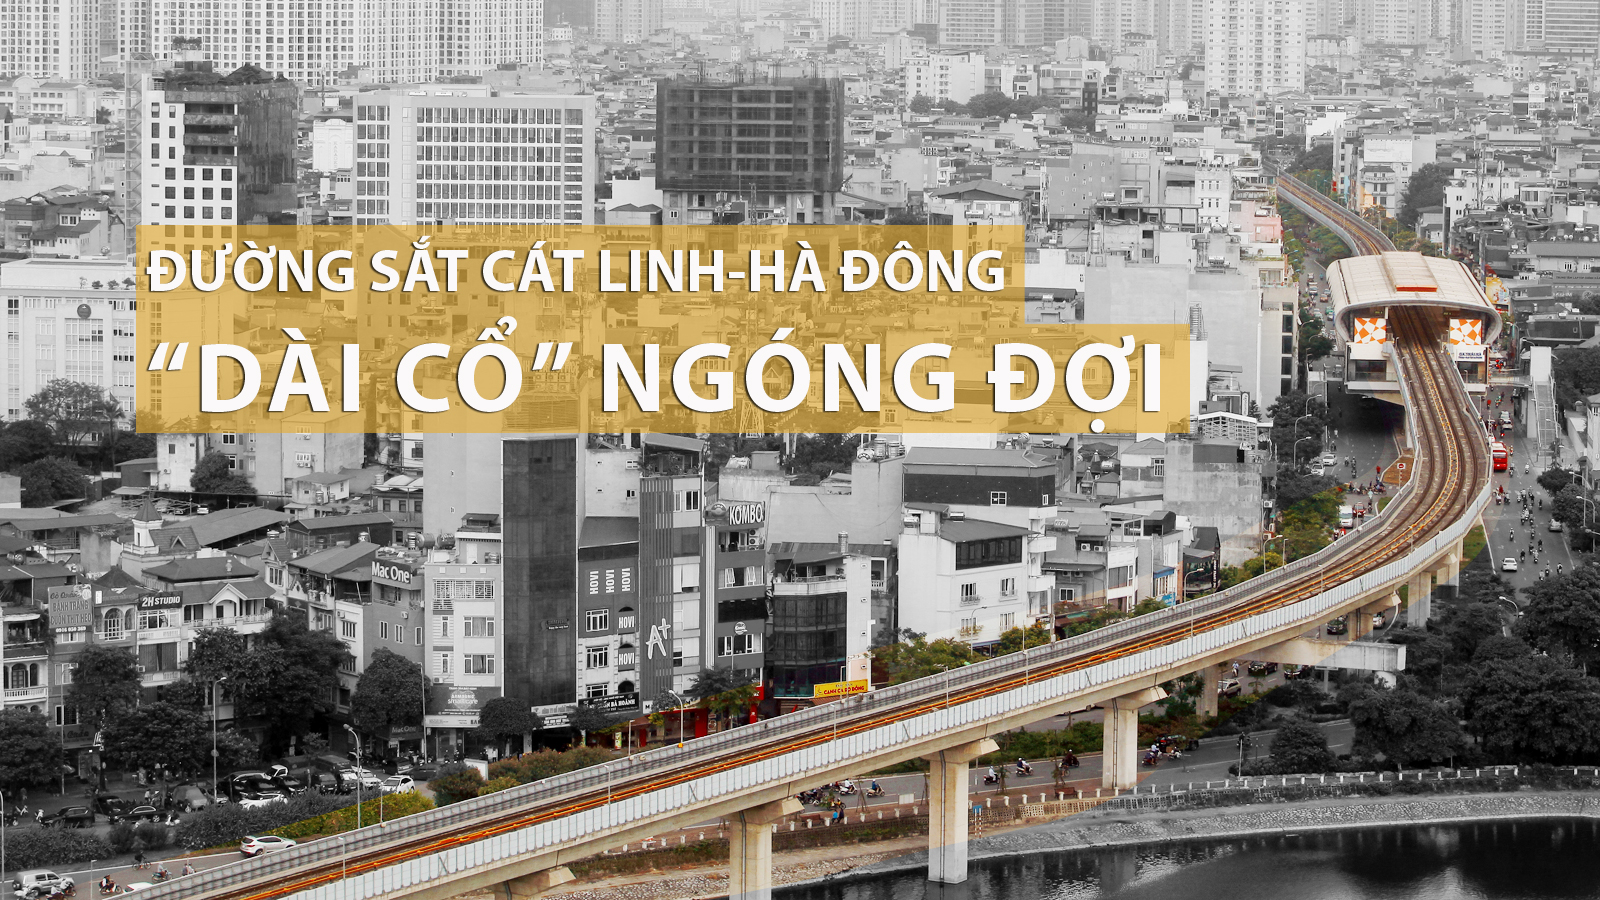 Gầm cầu đường sắt Cát Linh-Hà Đông thành quán trà đá, bãi đỗ xe, dân lại &#34;dài cổ&#34; ngóng đợi - 1